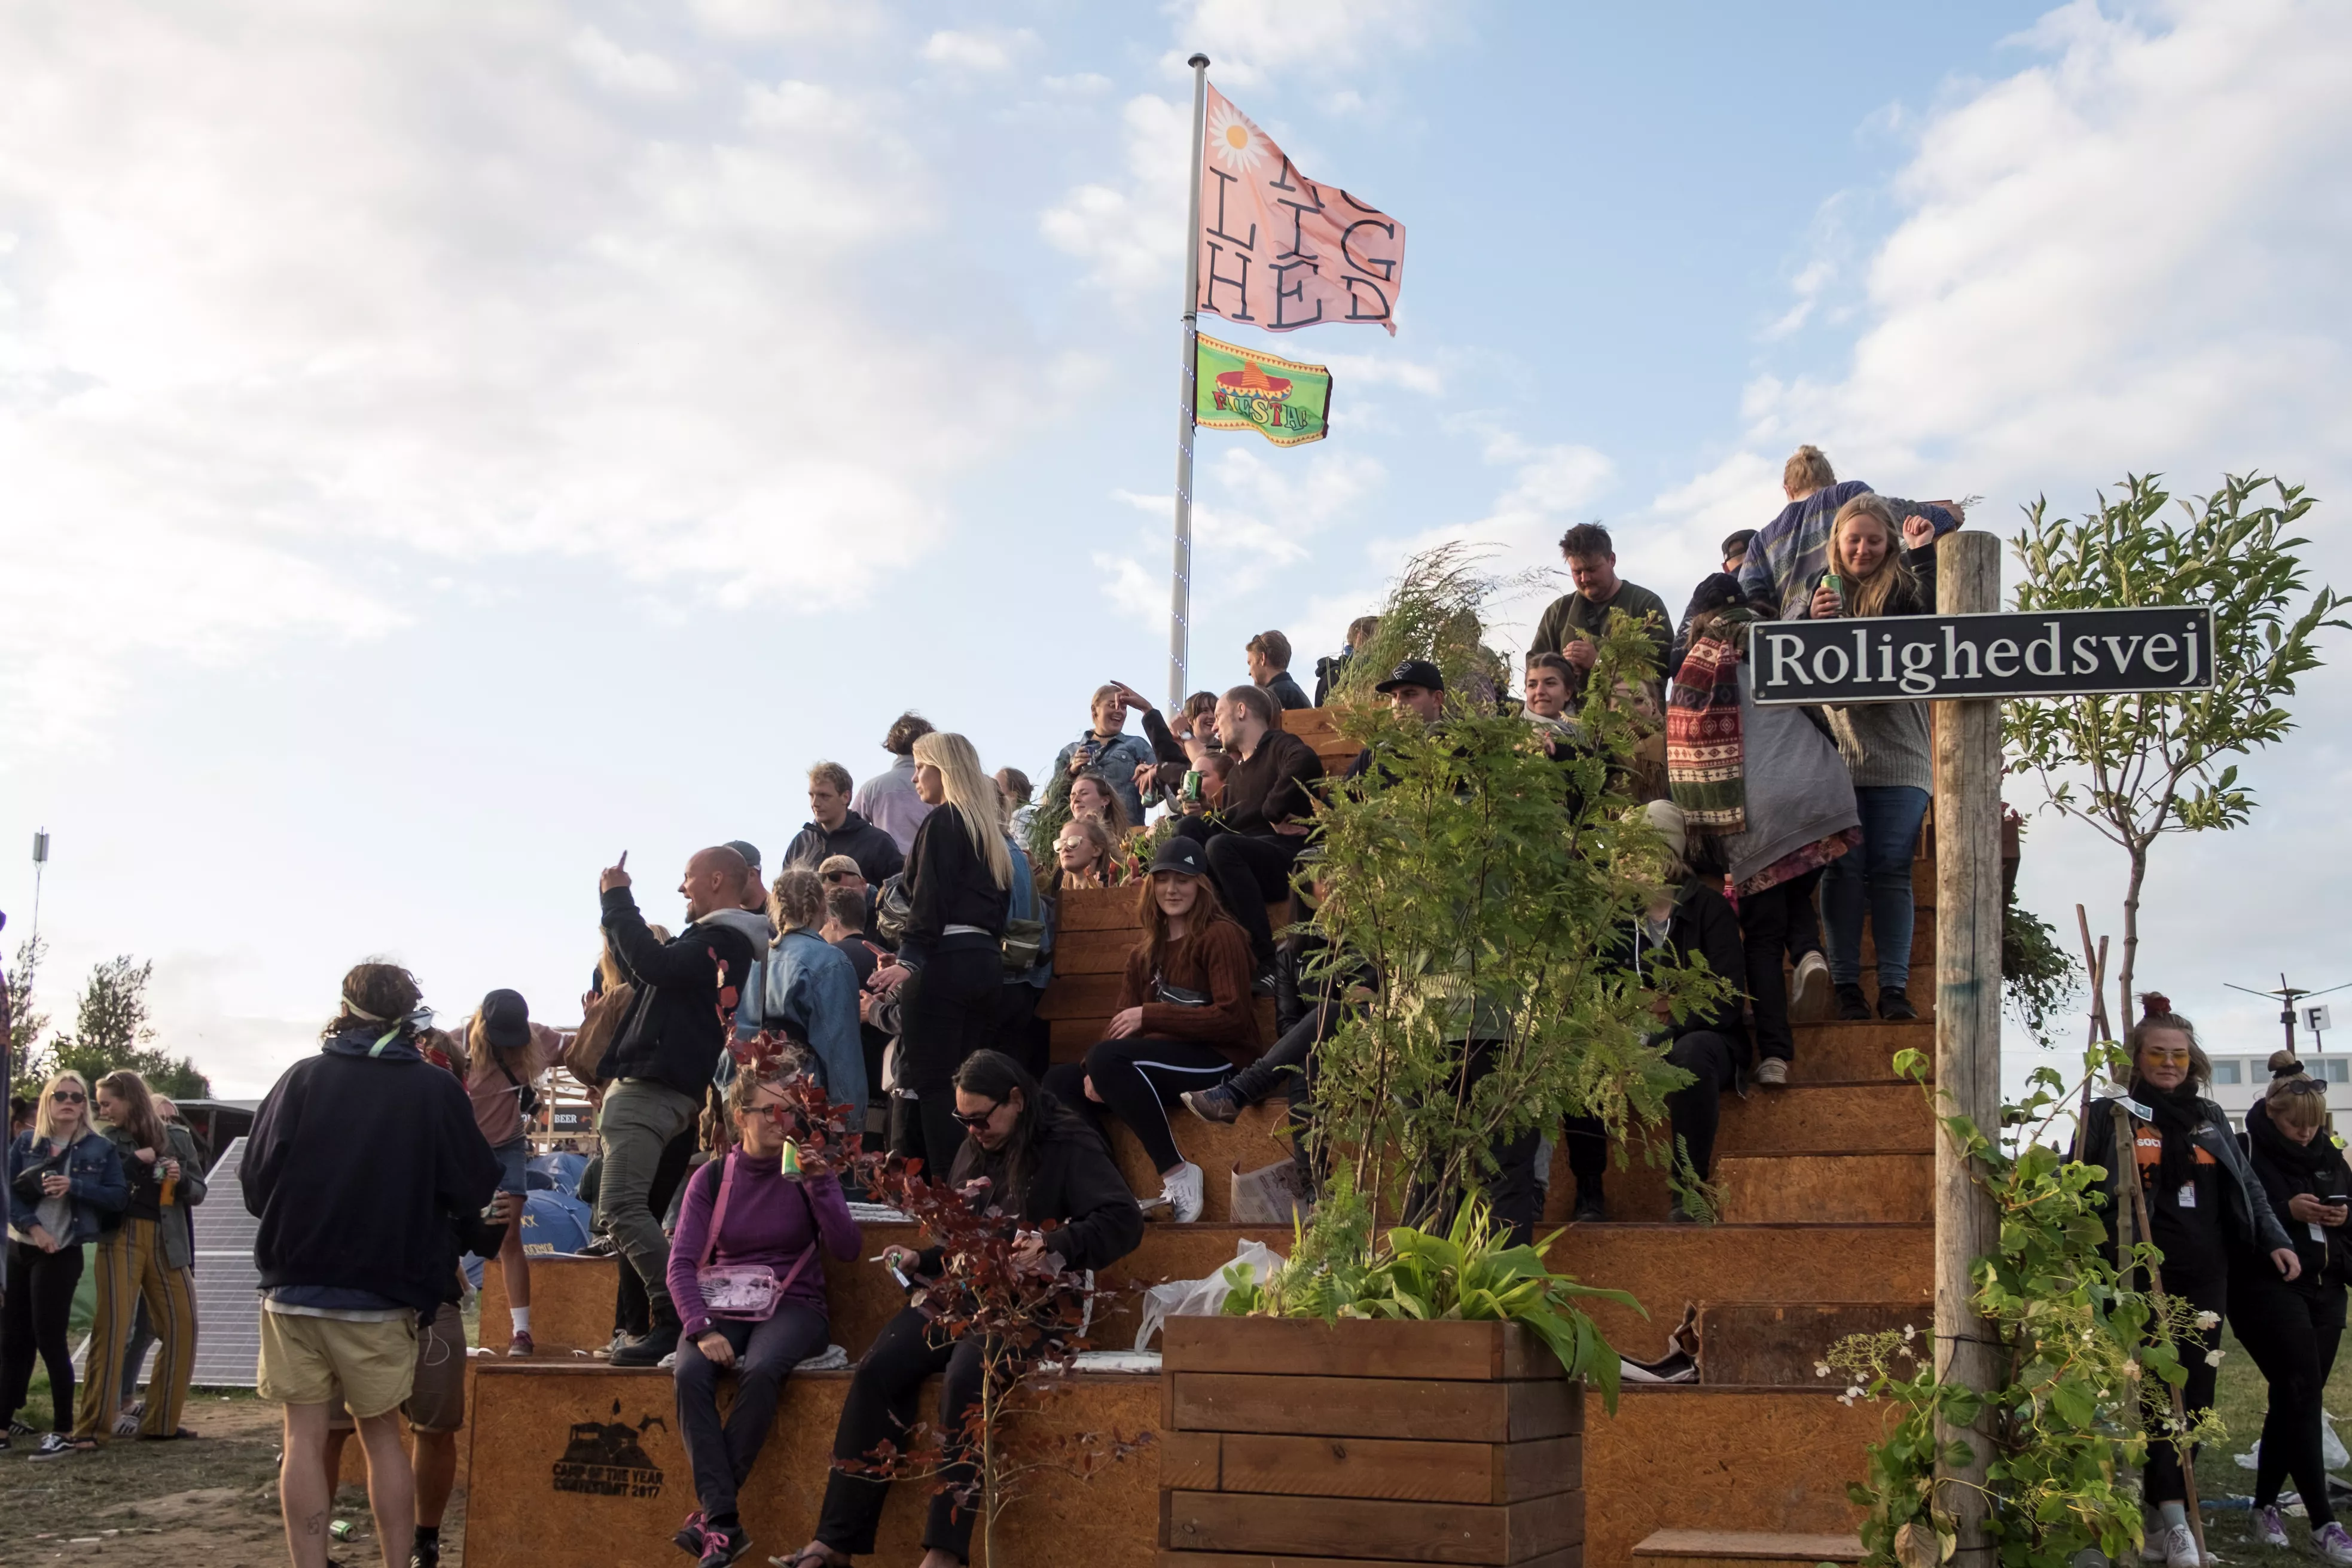 Dagens Camp på Roskilde: – Vi vil gerne lægge vægt på det grønne byrum